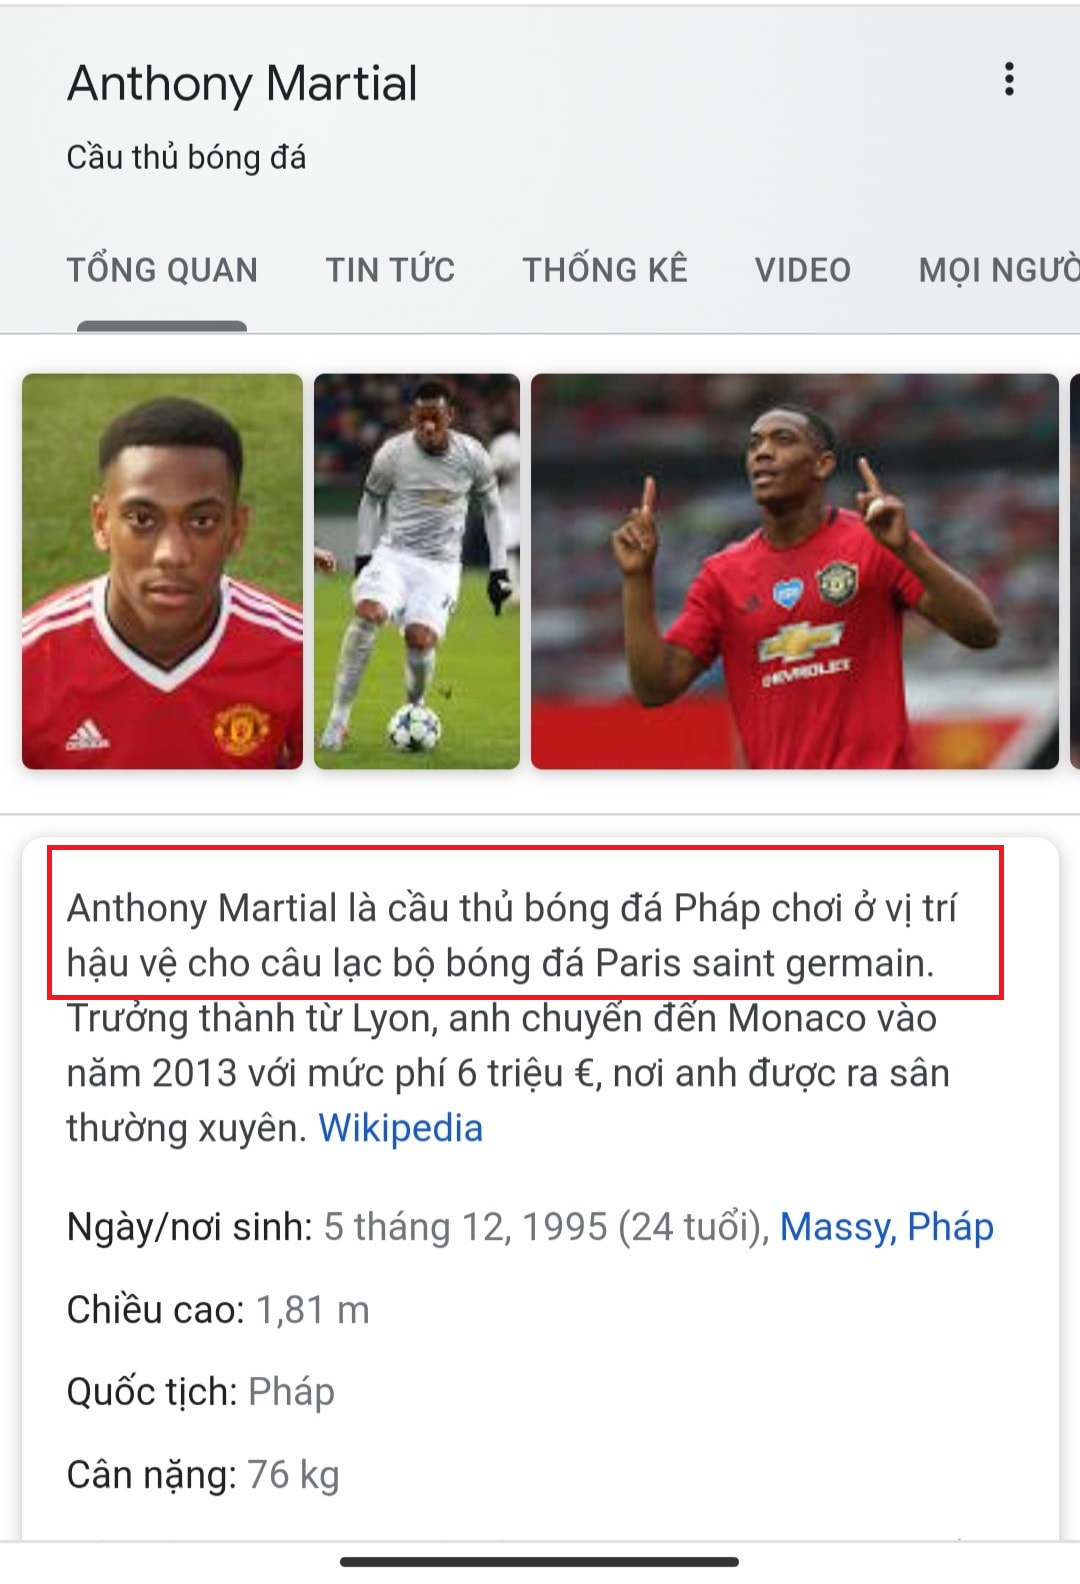 Trang Wikipedia cá nhân của Martial bị sửa